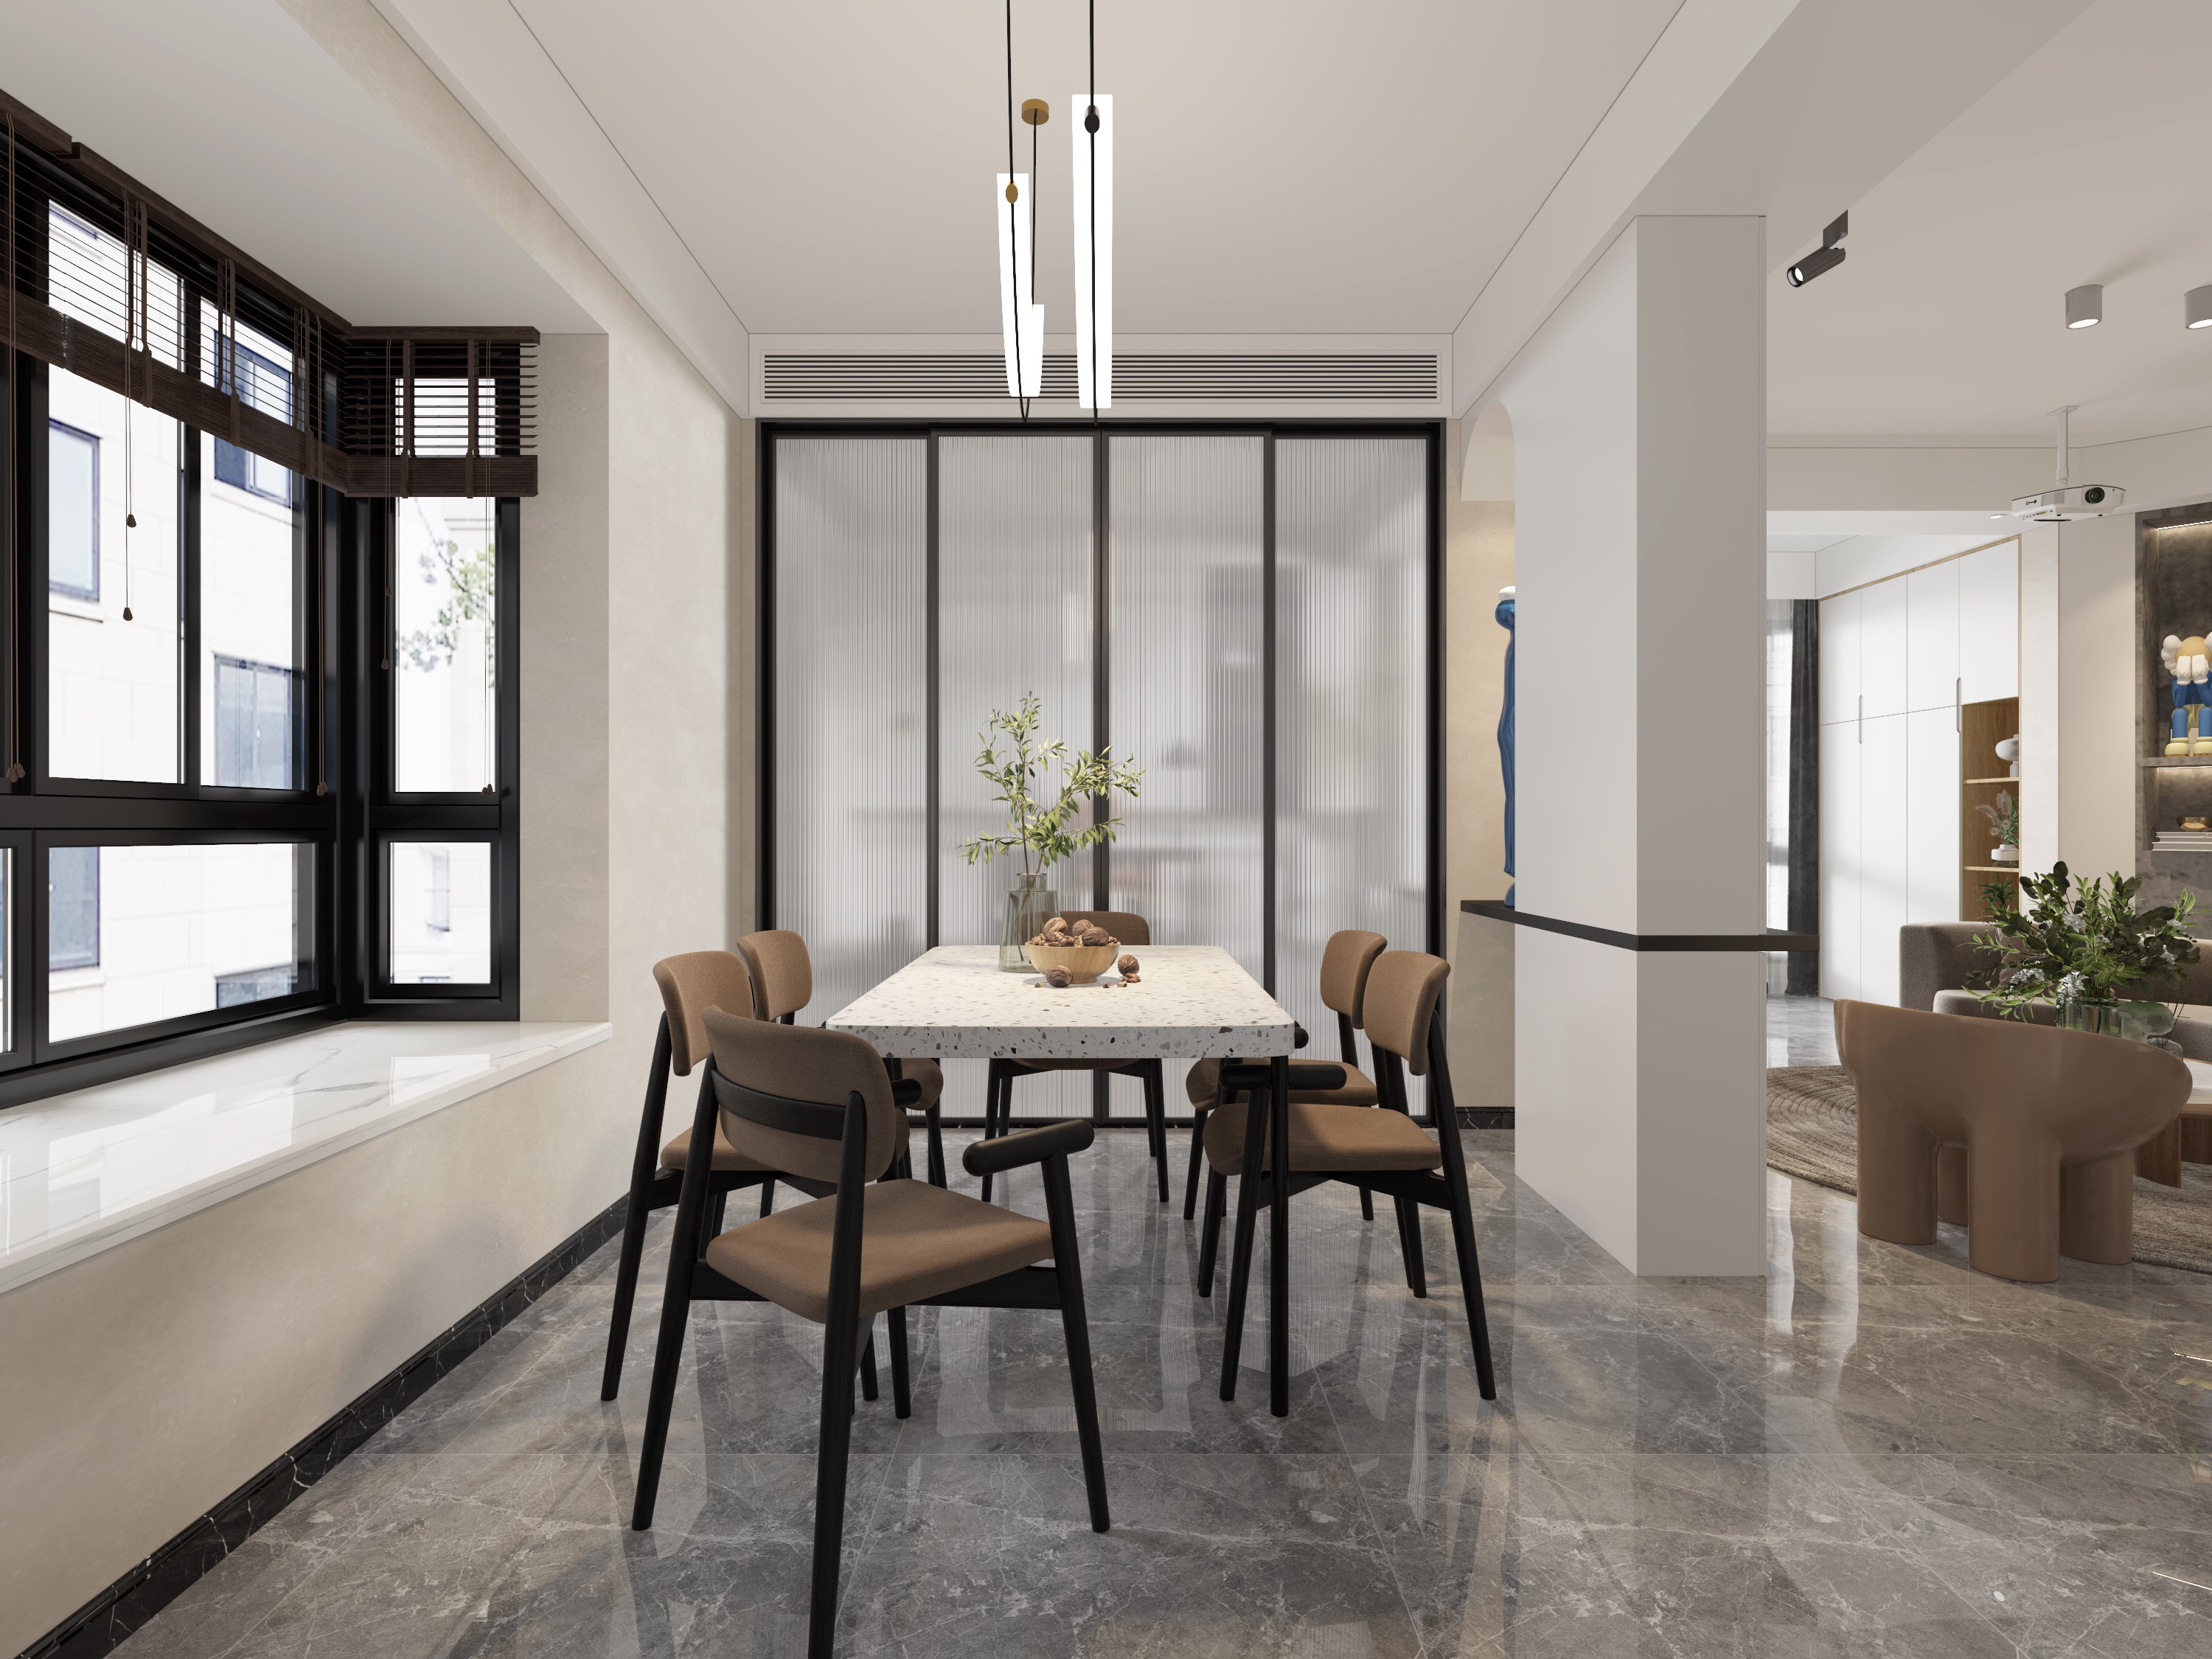 现代简约客餐厅 - 效果图交流区-建E室内设计网